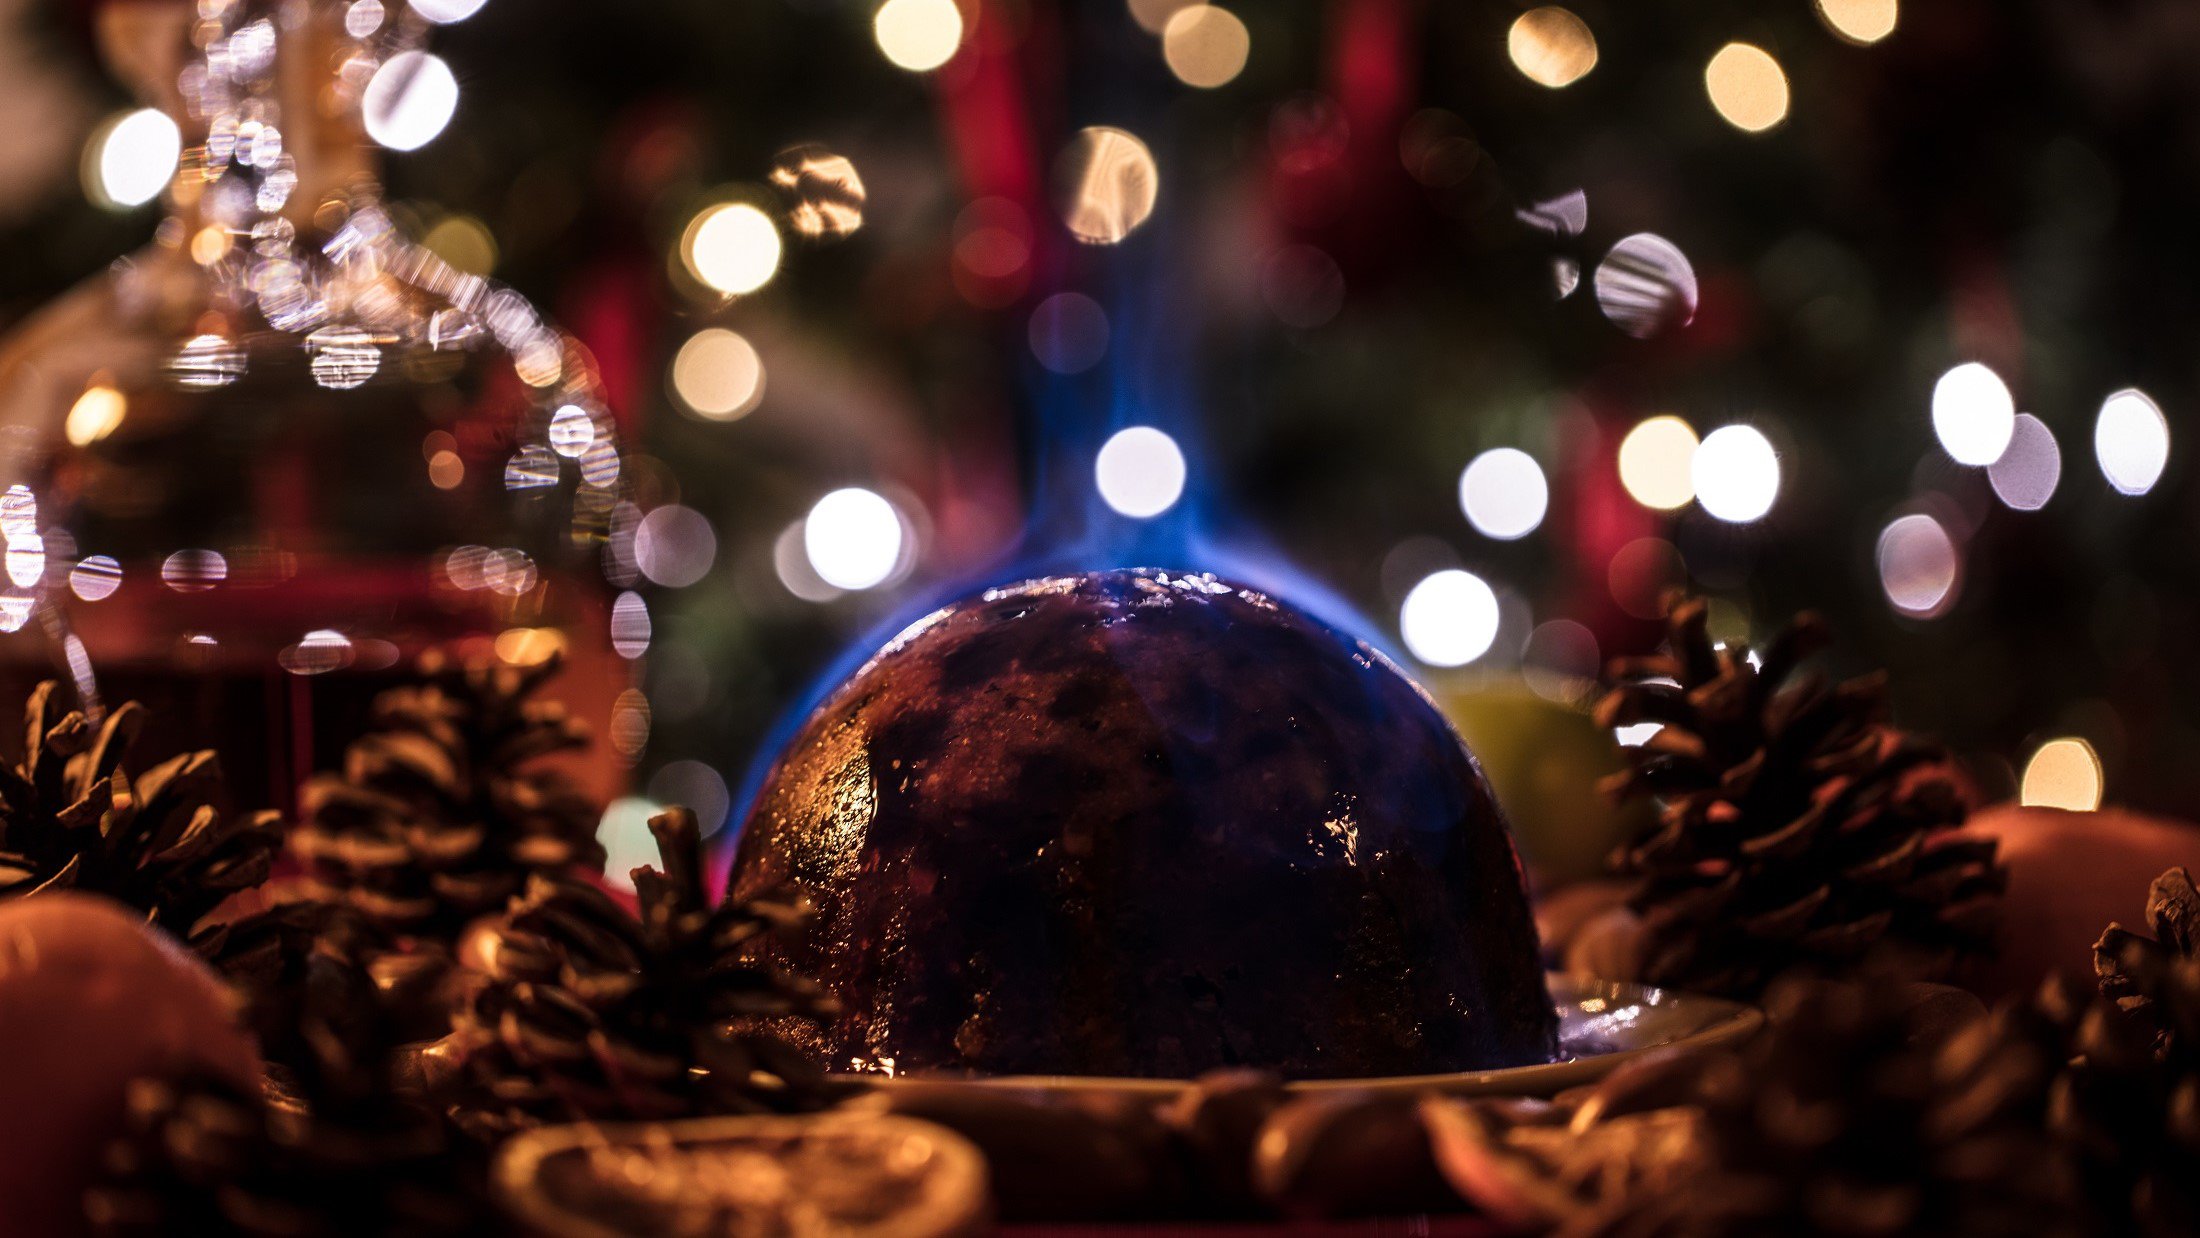 Frontal: Ein britischer Christmas Pudding der flambiert wird. Drum herum ist es weihnachtlich geschmückt.